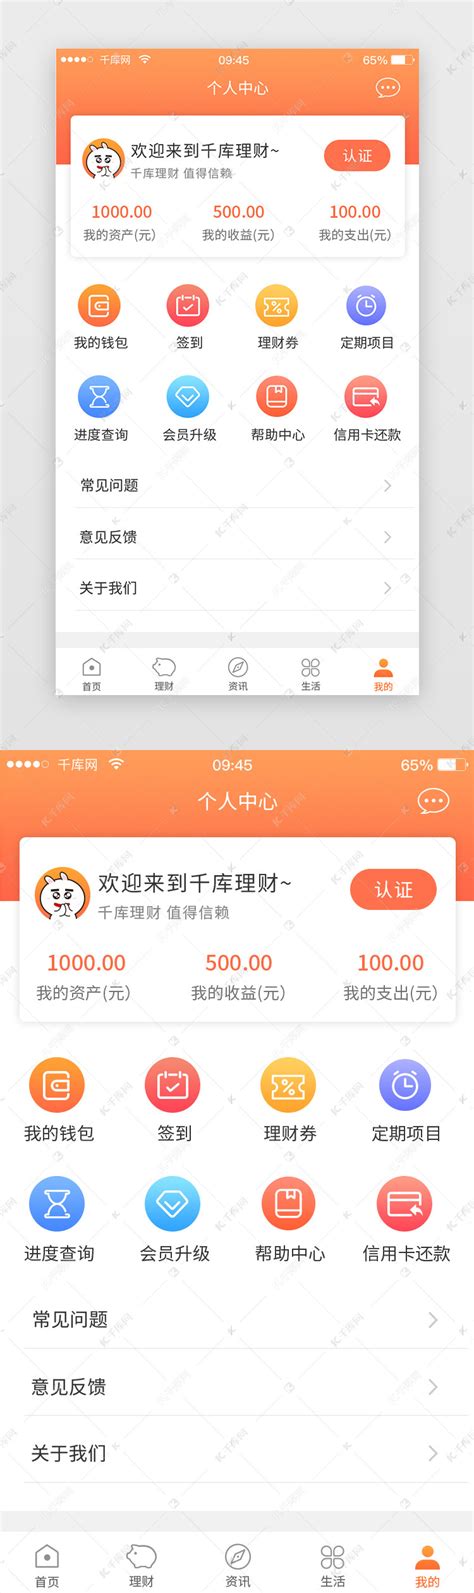 橙色互联网金融理财个人中心App界面ui界面设计素材-千库网